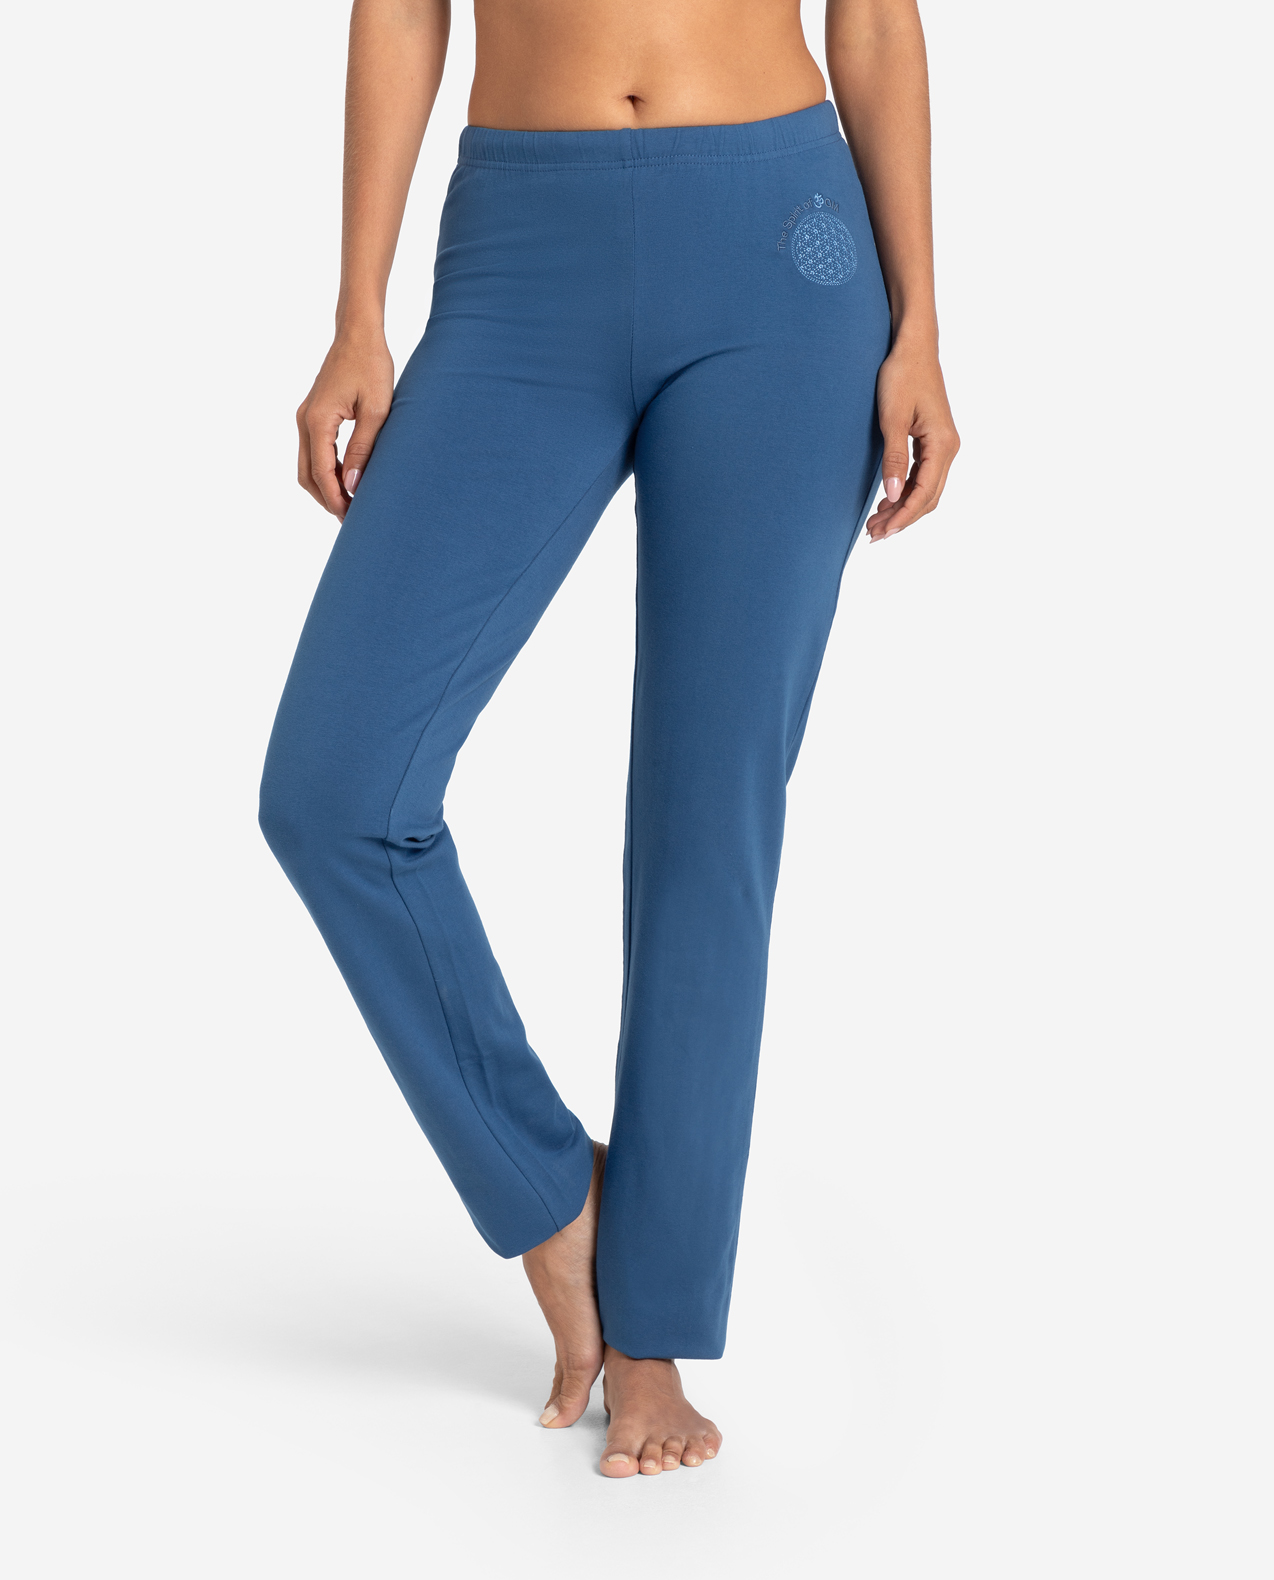 The Spirit of OM wellness kalhoty z bio bavlny dlouhé unisex - džínově modré Velikost: XS